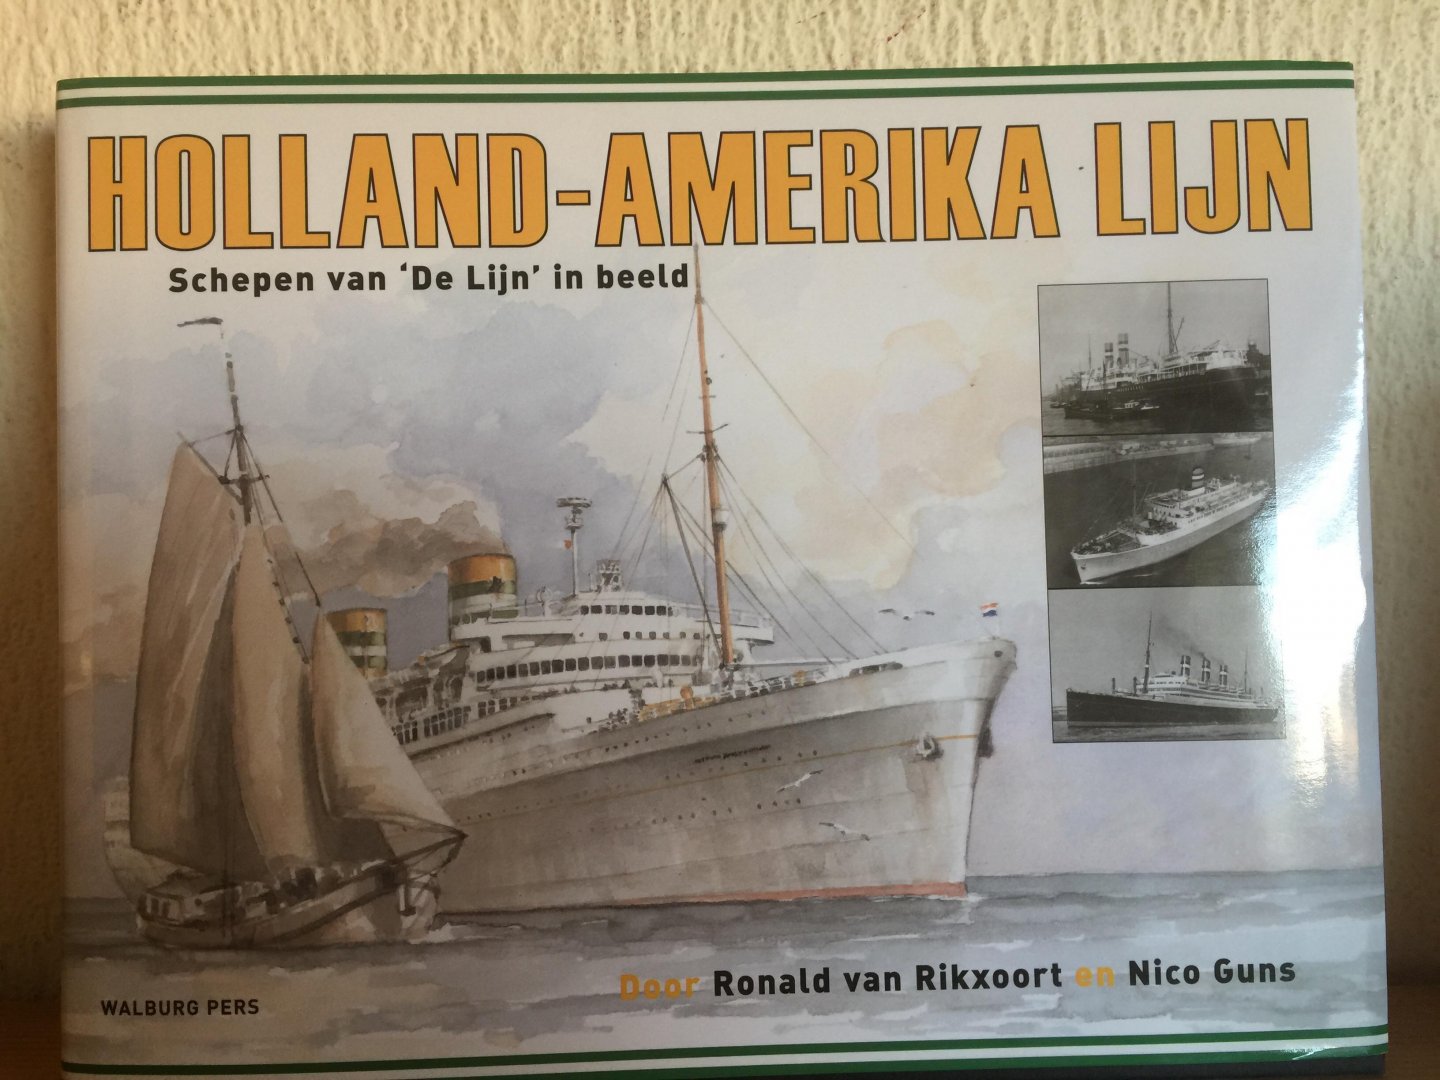 Guns, N. - Holland-Amerika Lijn / schepen van 'De Lijn' in beeld